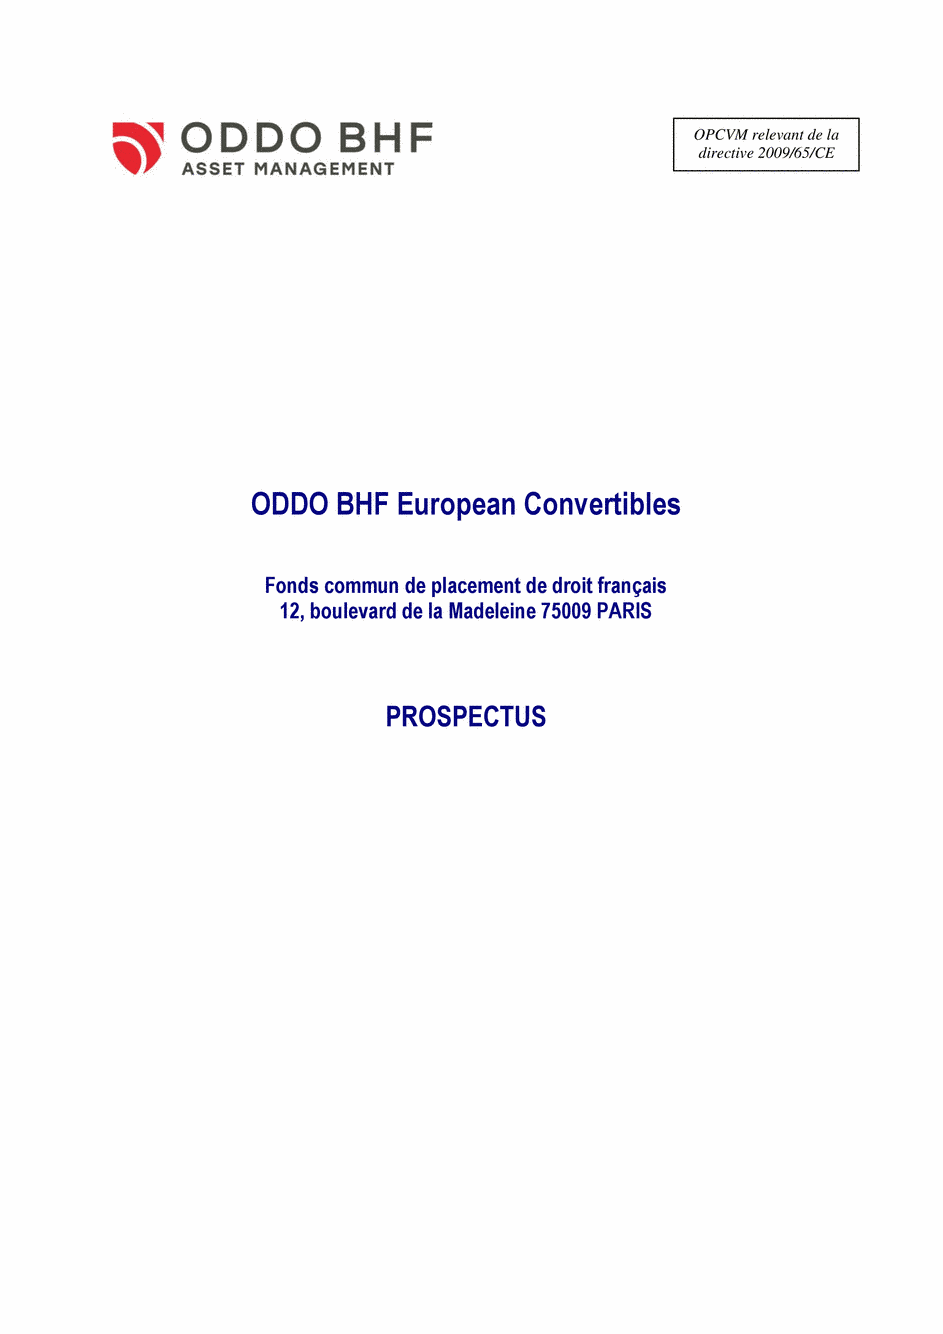 Prospectus ODDO BHF EUROPEAN CONVERTIBLES GC-EUR - 24/08/2020 - Français